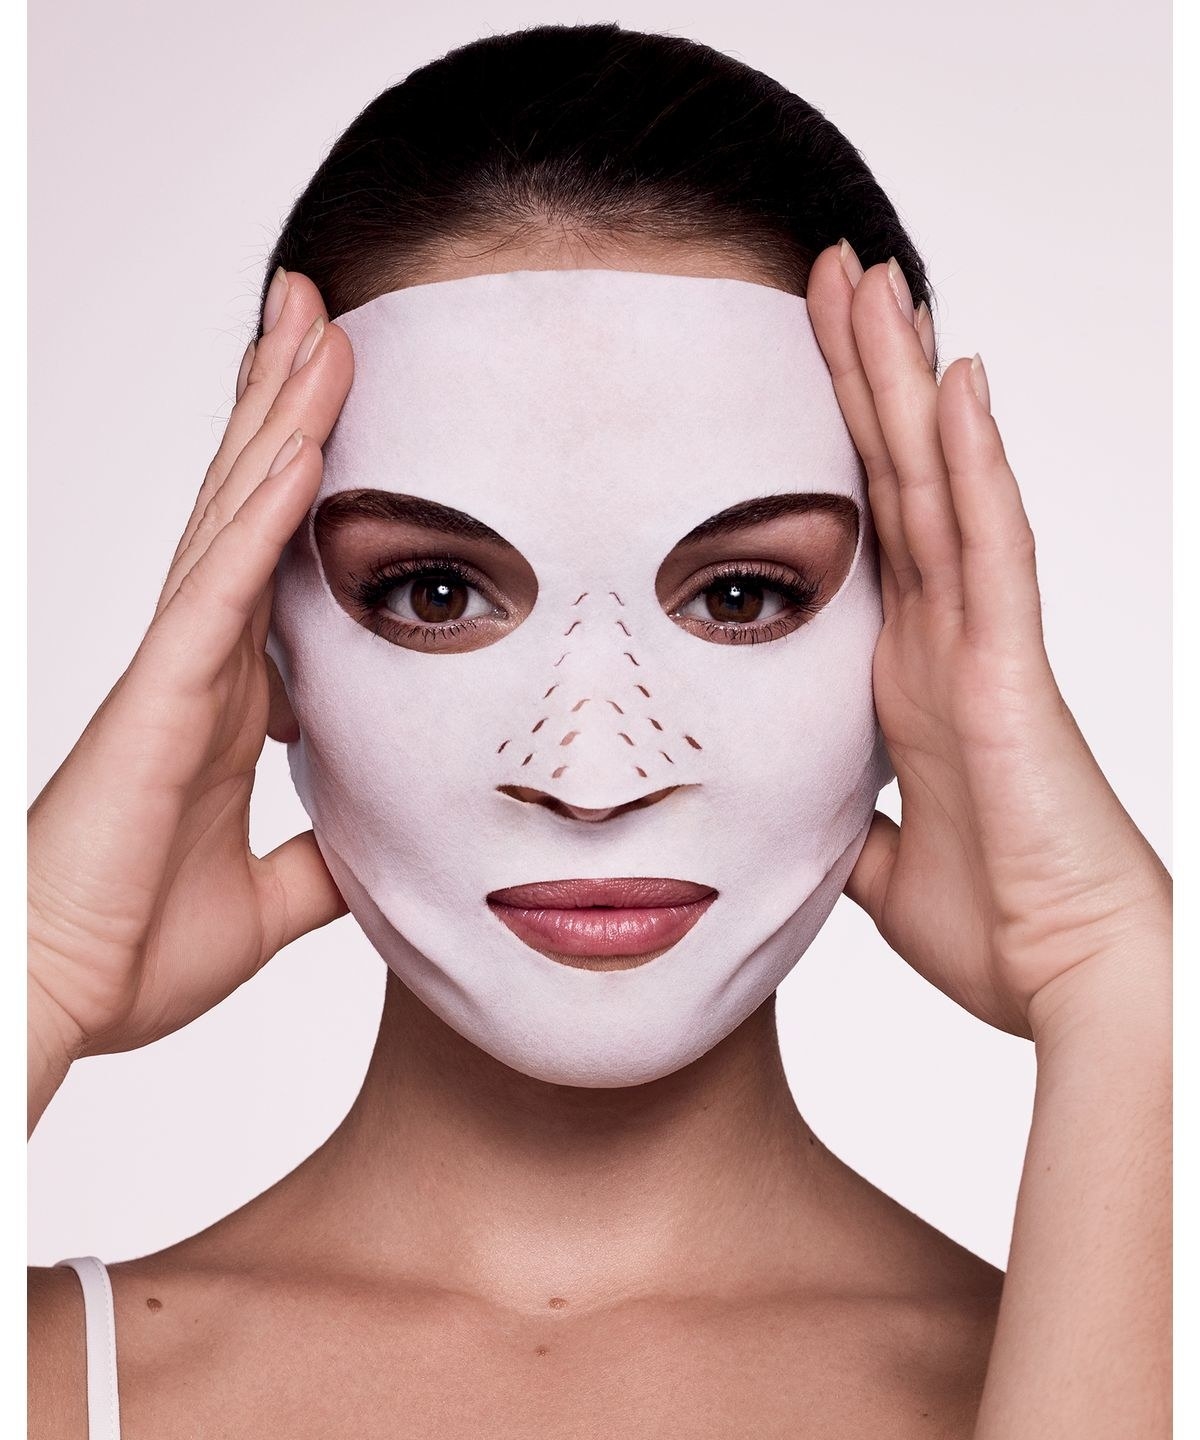 Маска лучшие выступления. Маска для лица. М̆̈ӑ̈с̆̈к̆̈й̈ д̆̈л̆̈я̆̈ л̆̈й̈ц̆̈ӑ̈. Женщина в маске для лица. Тканевые маски для лица.